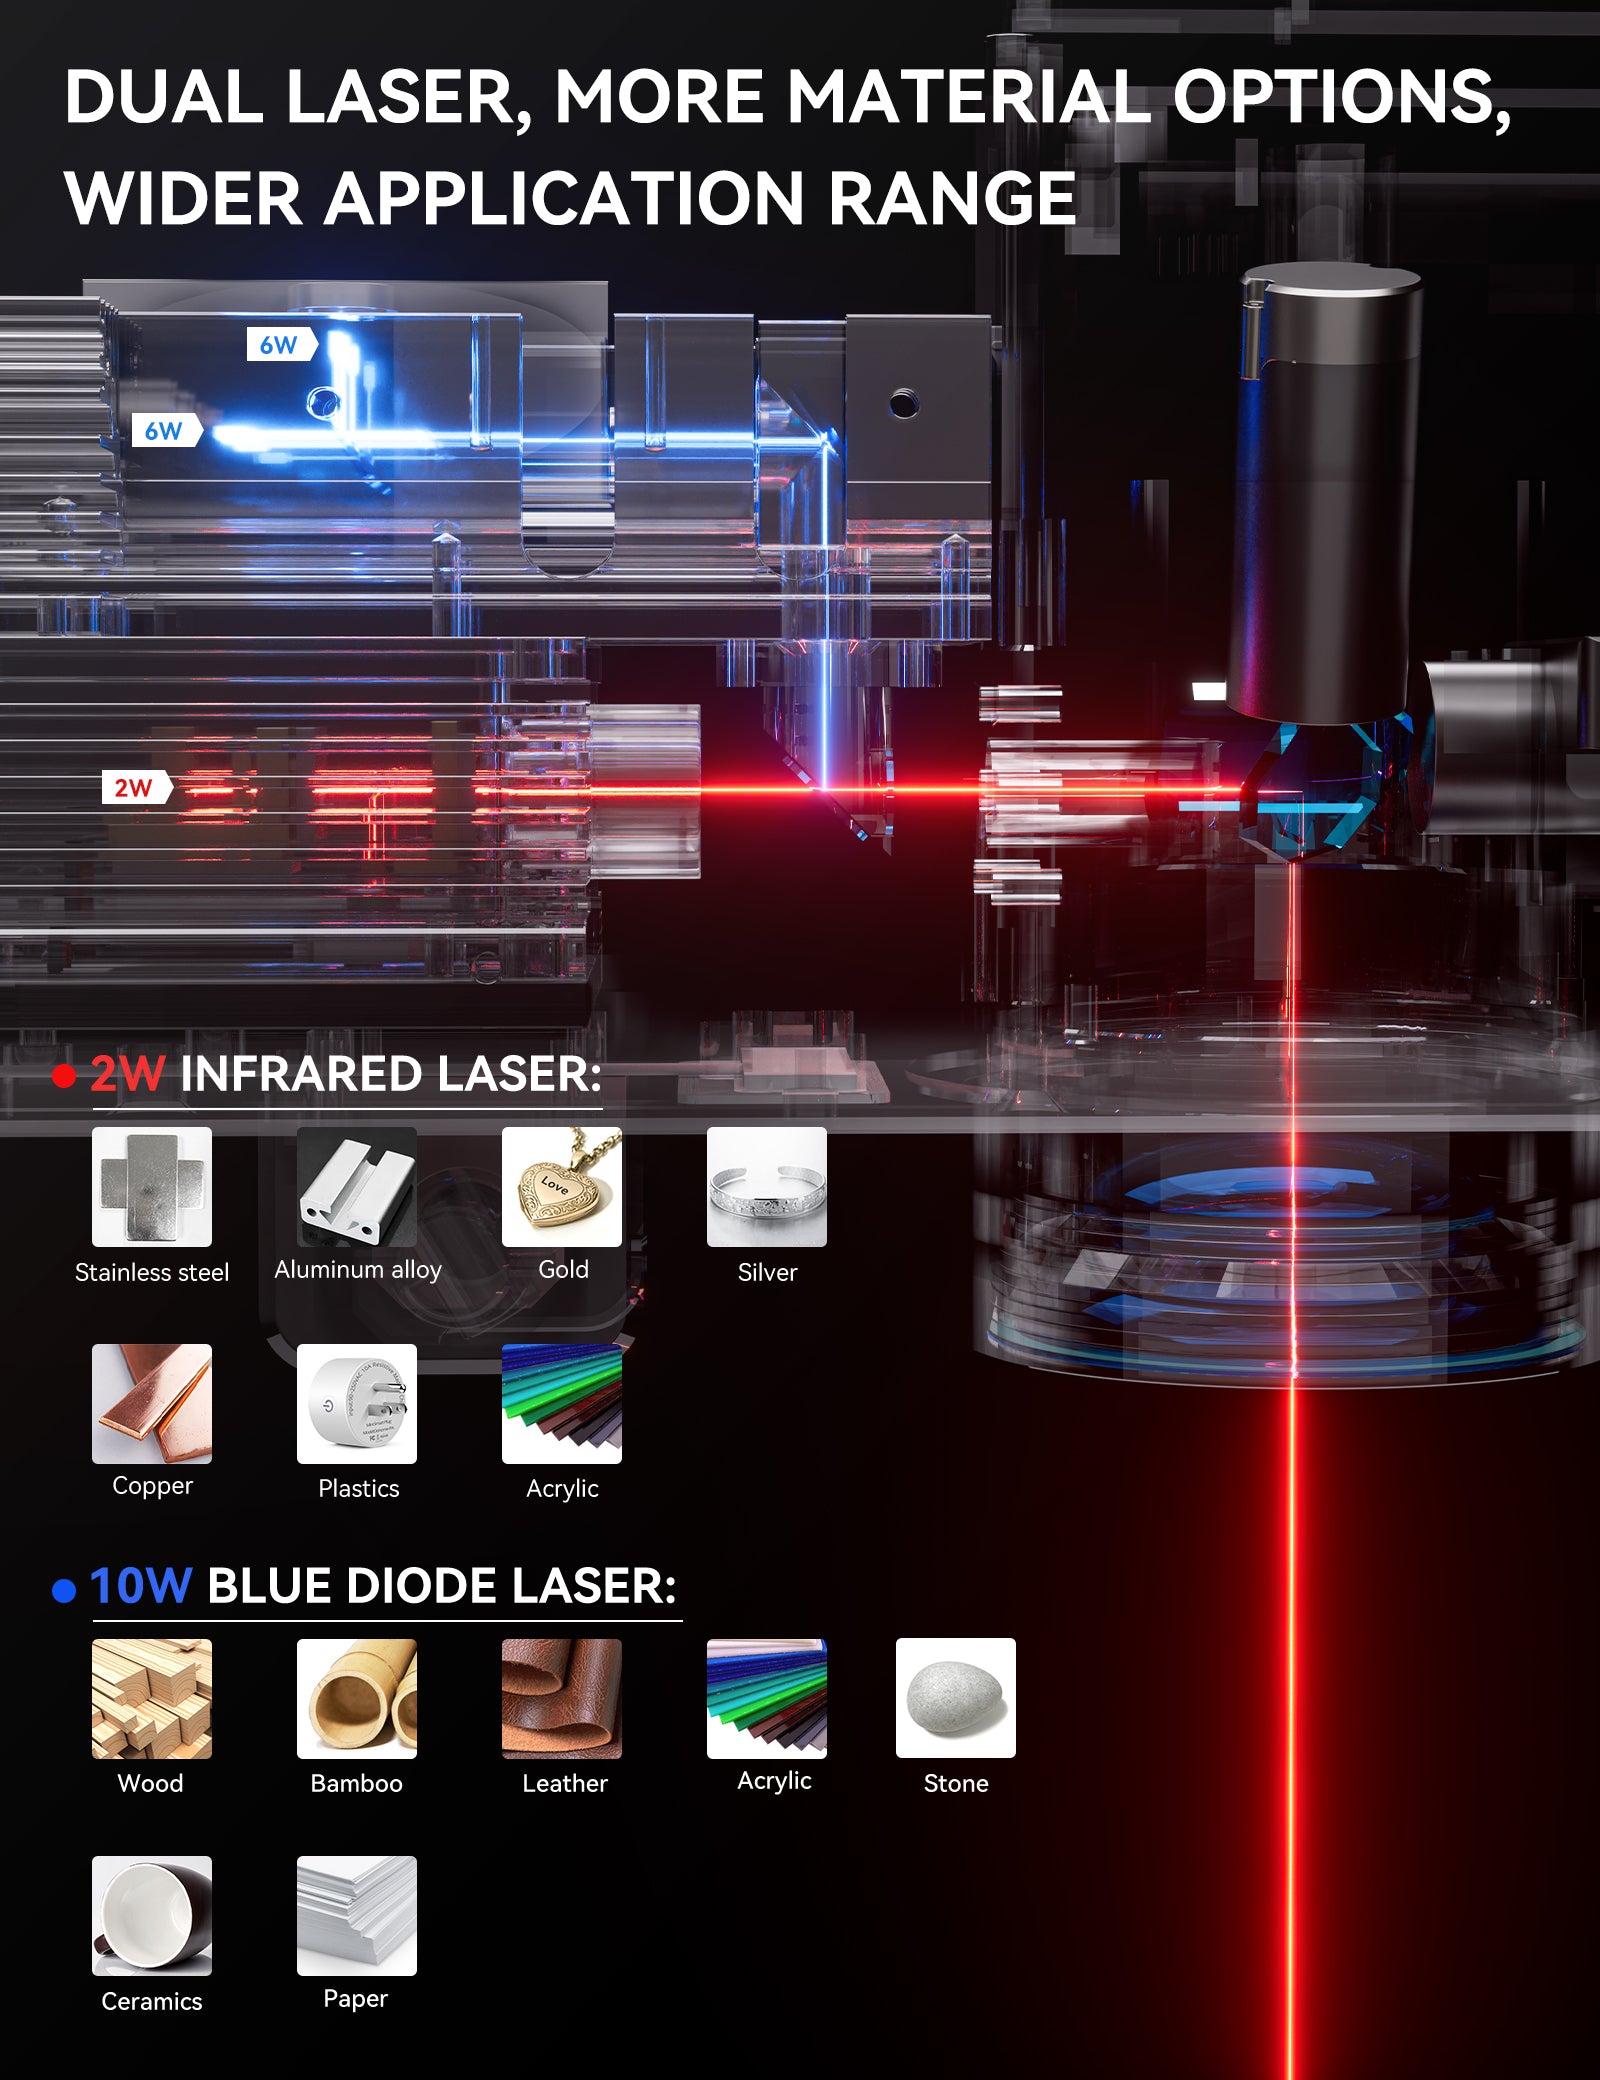 Atomstack M4 PRO Dual Laser Blue Diode Infrared Laser Desktop Handheld 2-In-1 Fiber Laser Marking Machine